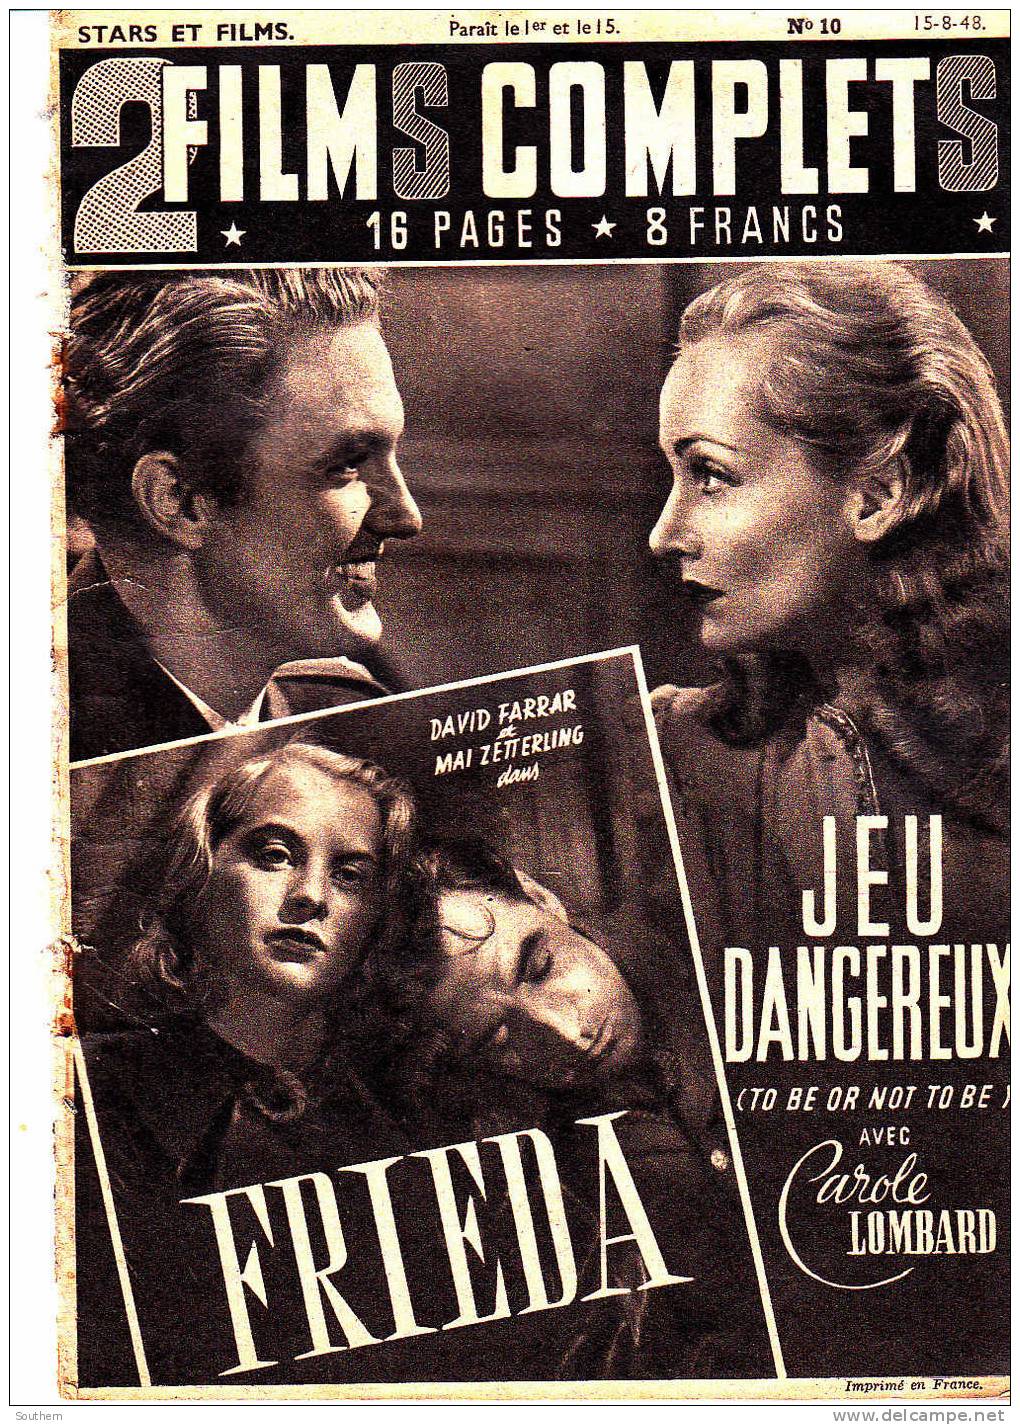 Stars Et Films 2 Films Complets N° 10 -15/08/1948 - " Frieda " - " Jeu Dangereux " - Film/ Televisie